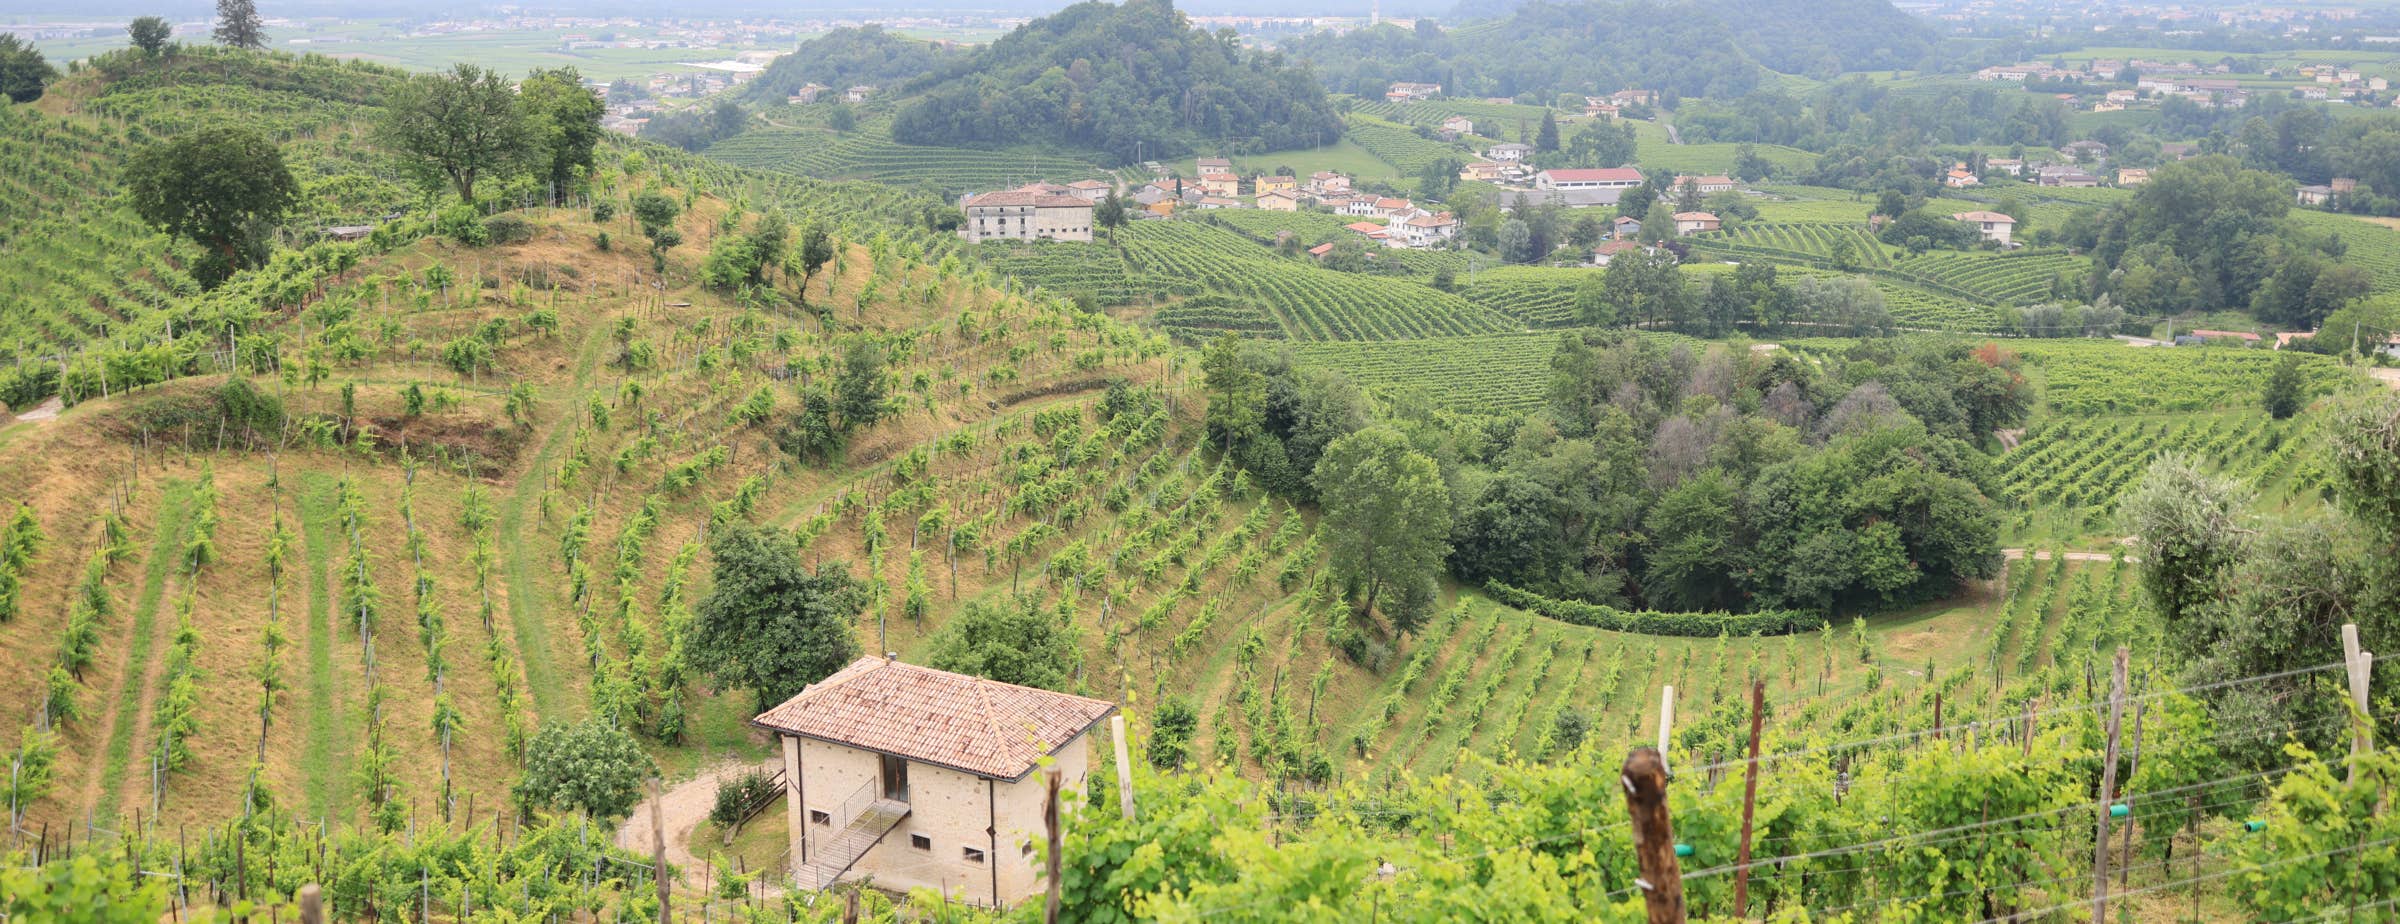 La imagen muestra viñedos en terrenos accidentados con casas de campo aisladas y pequeños grupos de edificios entre las parcelas de viñedos.